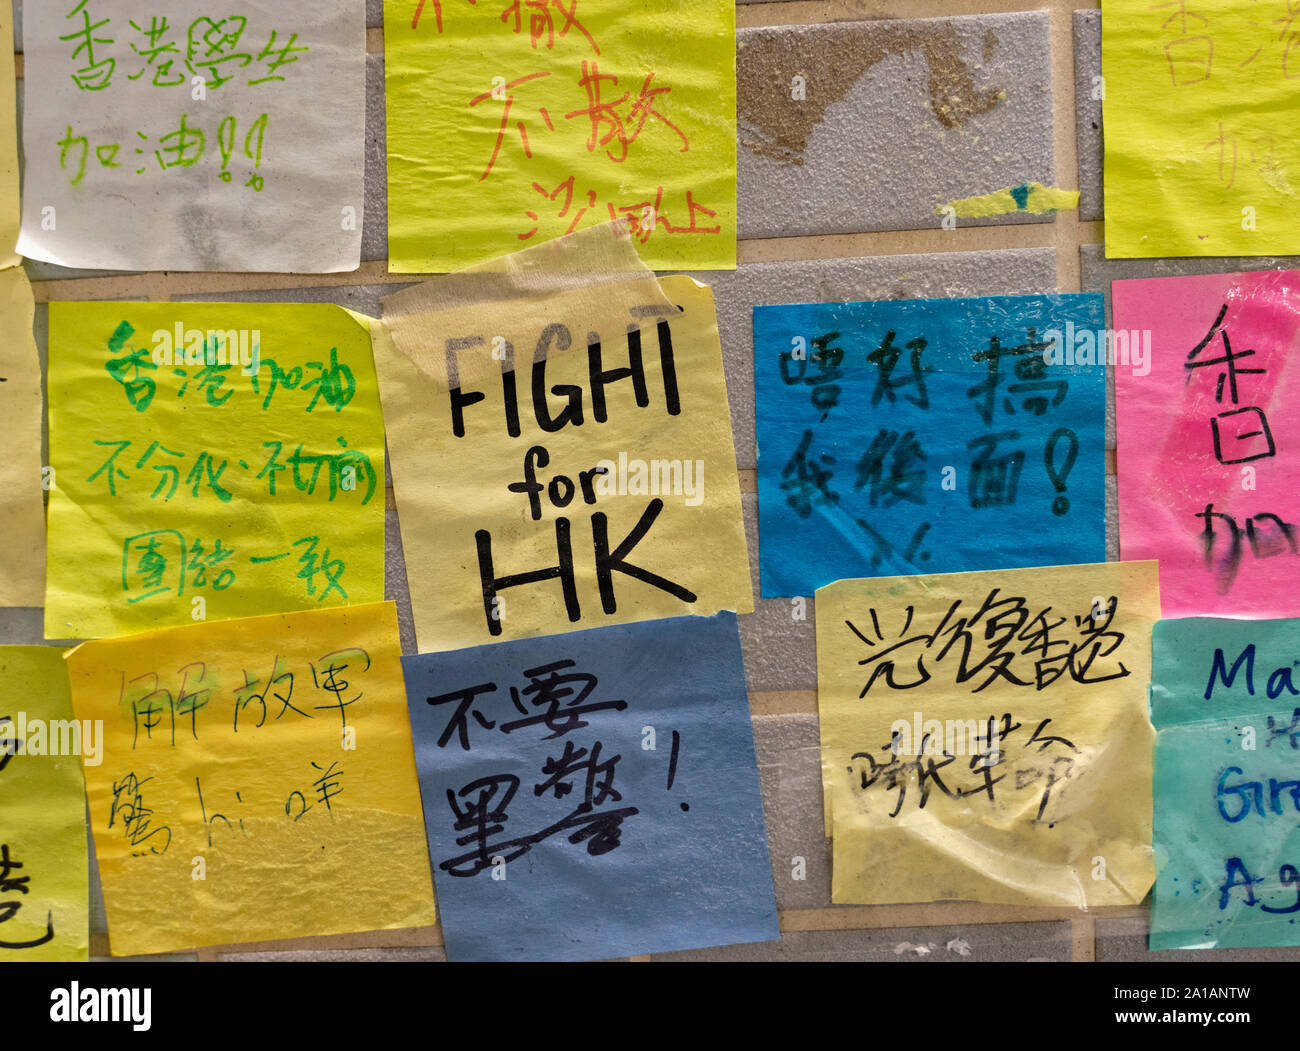 Pro Democracia y protestas contra la ley de extradición, lemas y carteles sobre Lennon paredes en Hong Kong. Pic Lennon paredes en Kwai Fong en Nuevos Territorios. Foto de stock